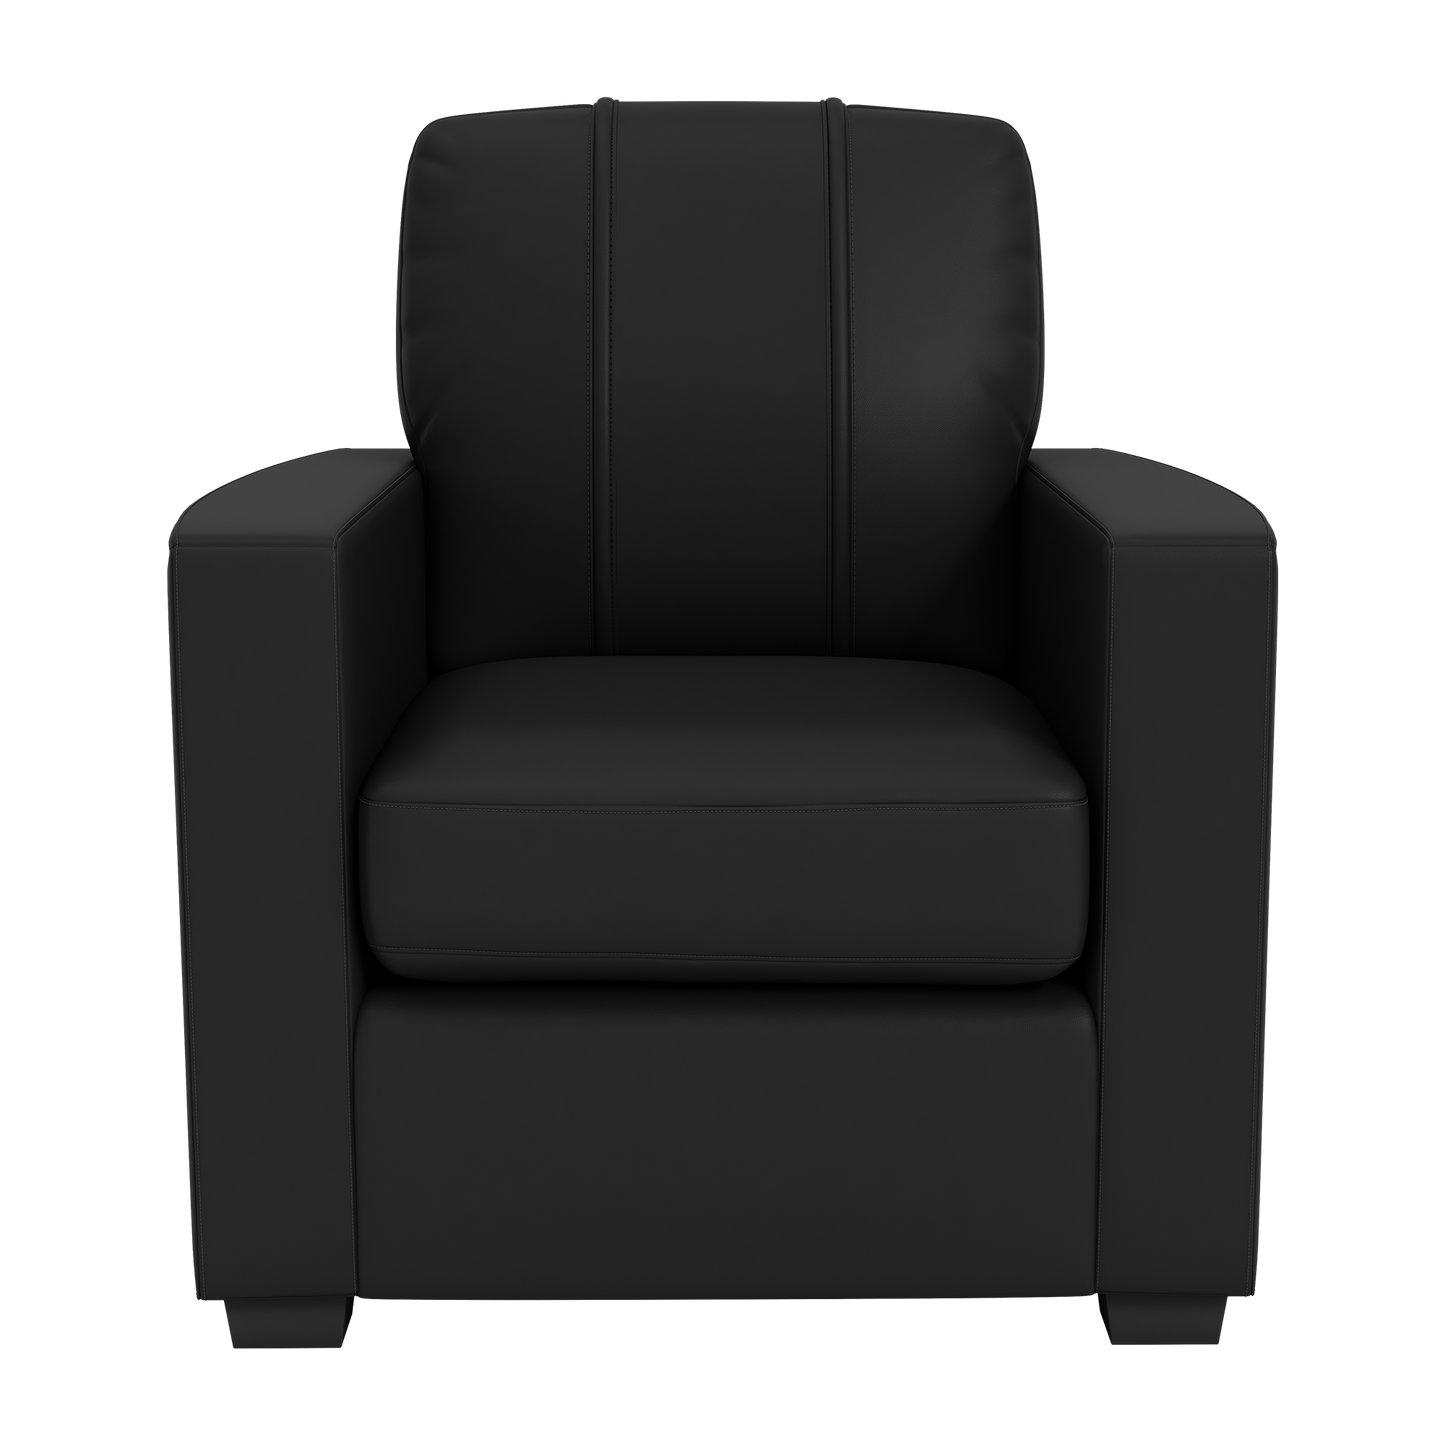 Silver Club Chair with Orlando City FC Wordmark Logo